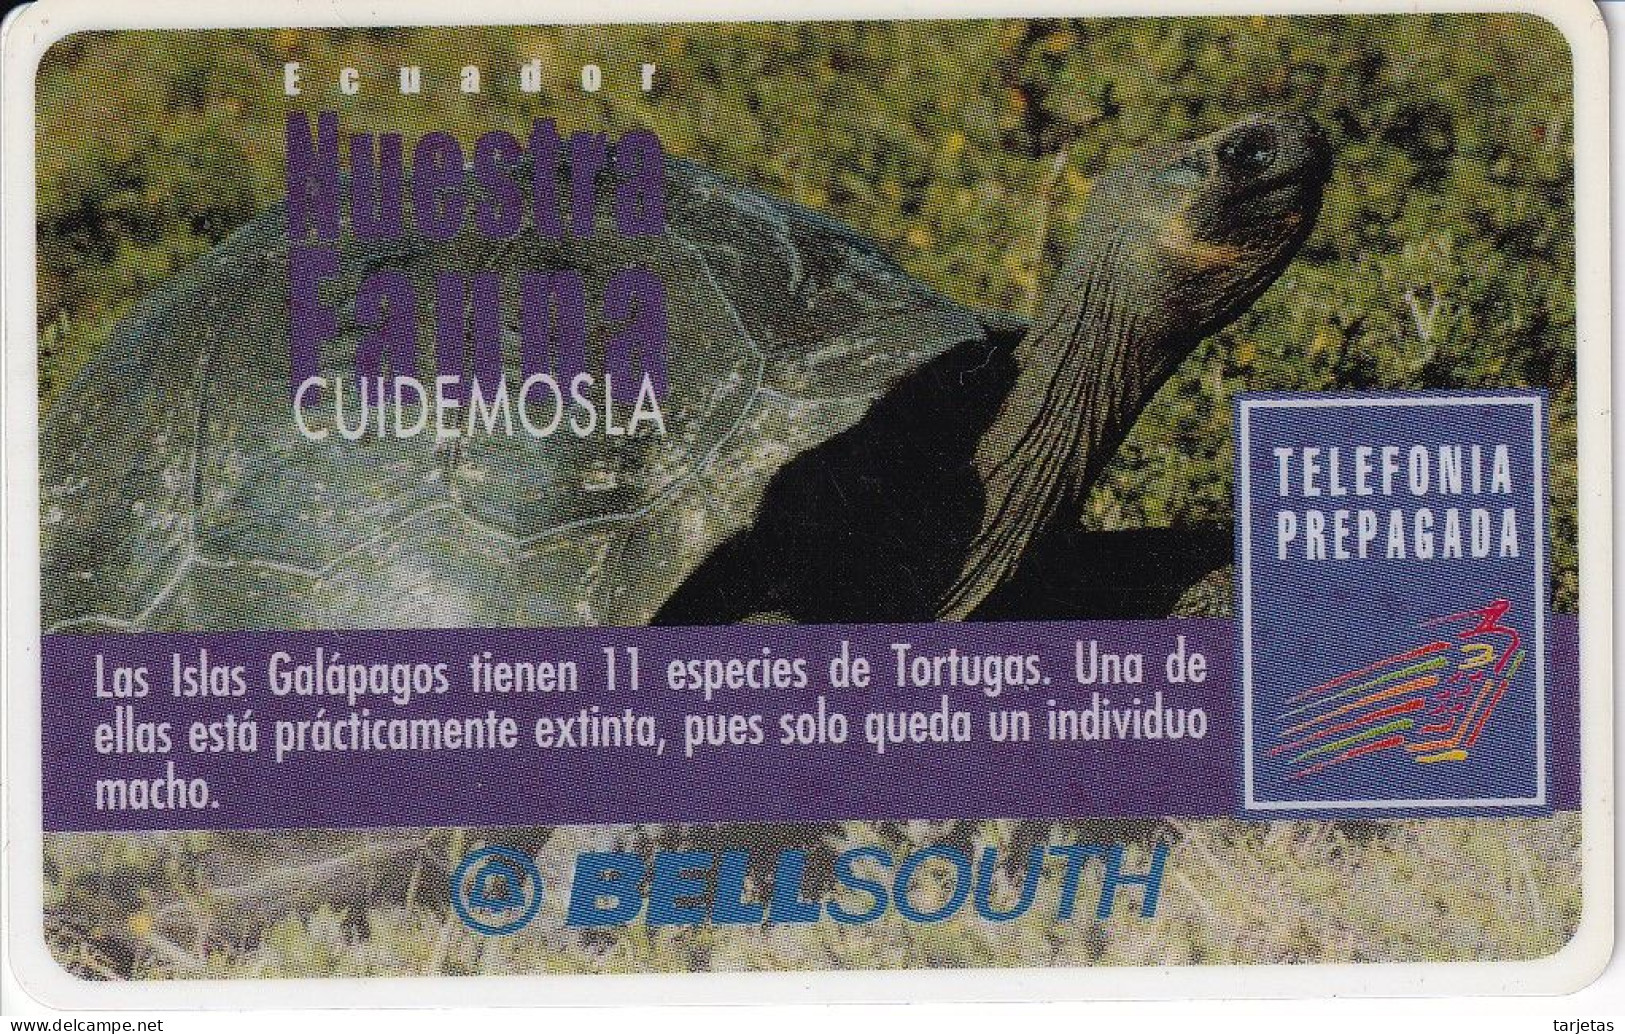 TARJETA DE ECUADOR DE UNA TORTUGA DE LAS GALAPAGOS (TURTLE) CON MARCO BLANCO ALREDEDOR - CADUCA NOVIEMBRE 2000 - Equateur